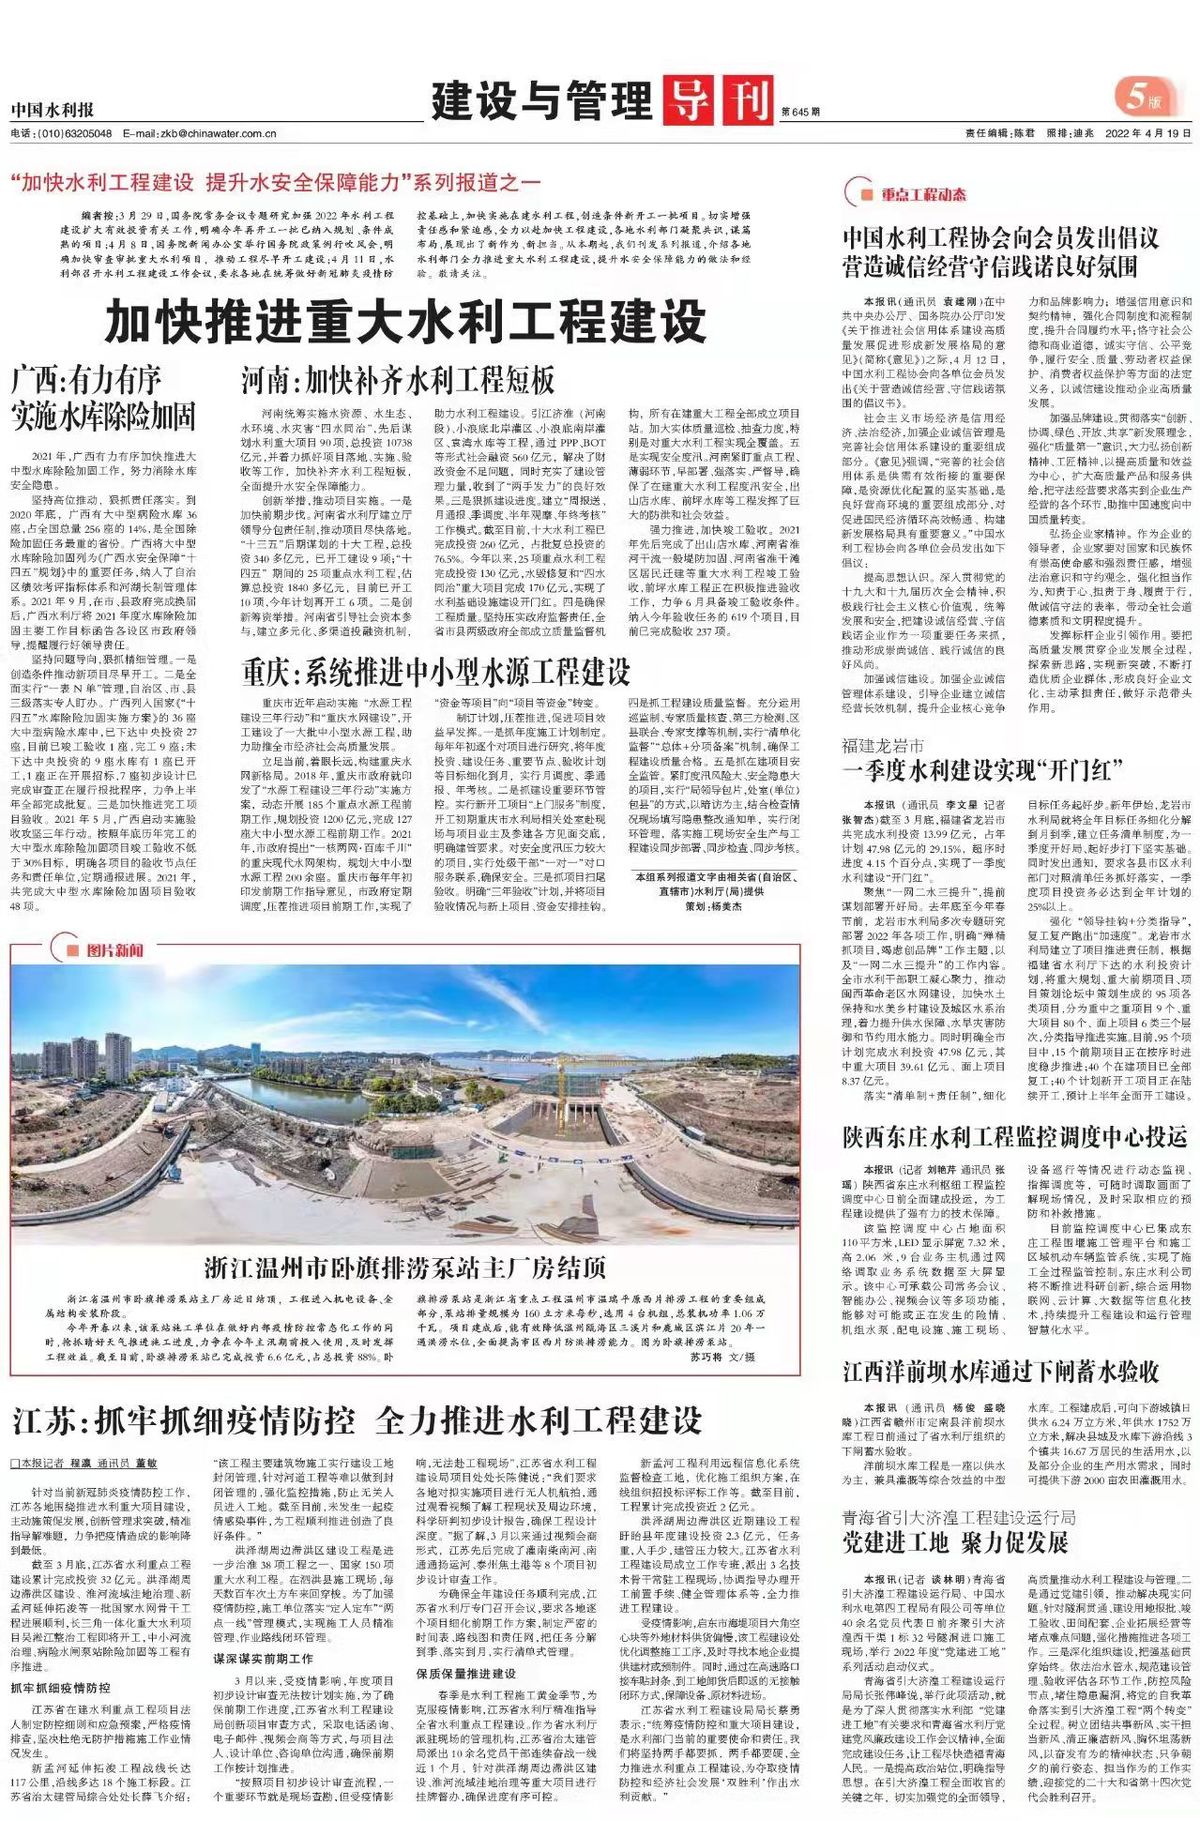 中国水利报：“加快水利工程建设 提升水安全保障能力”系列报道之一 加快推进重大水利工程建设